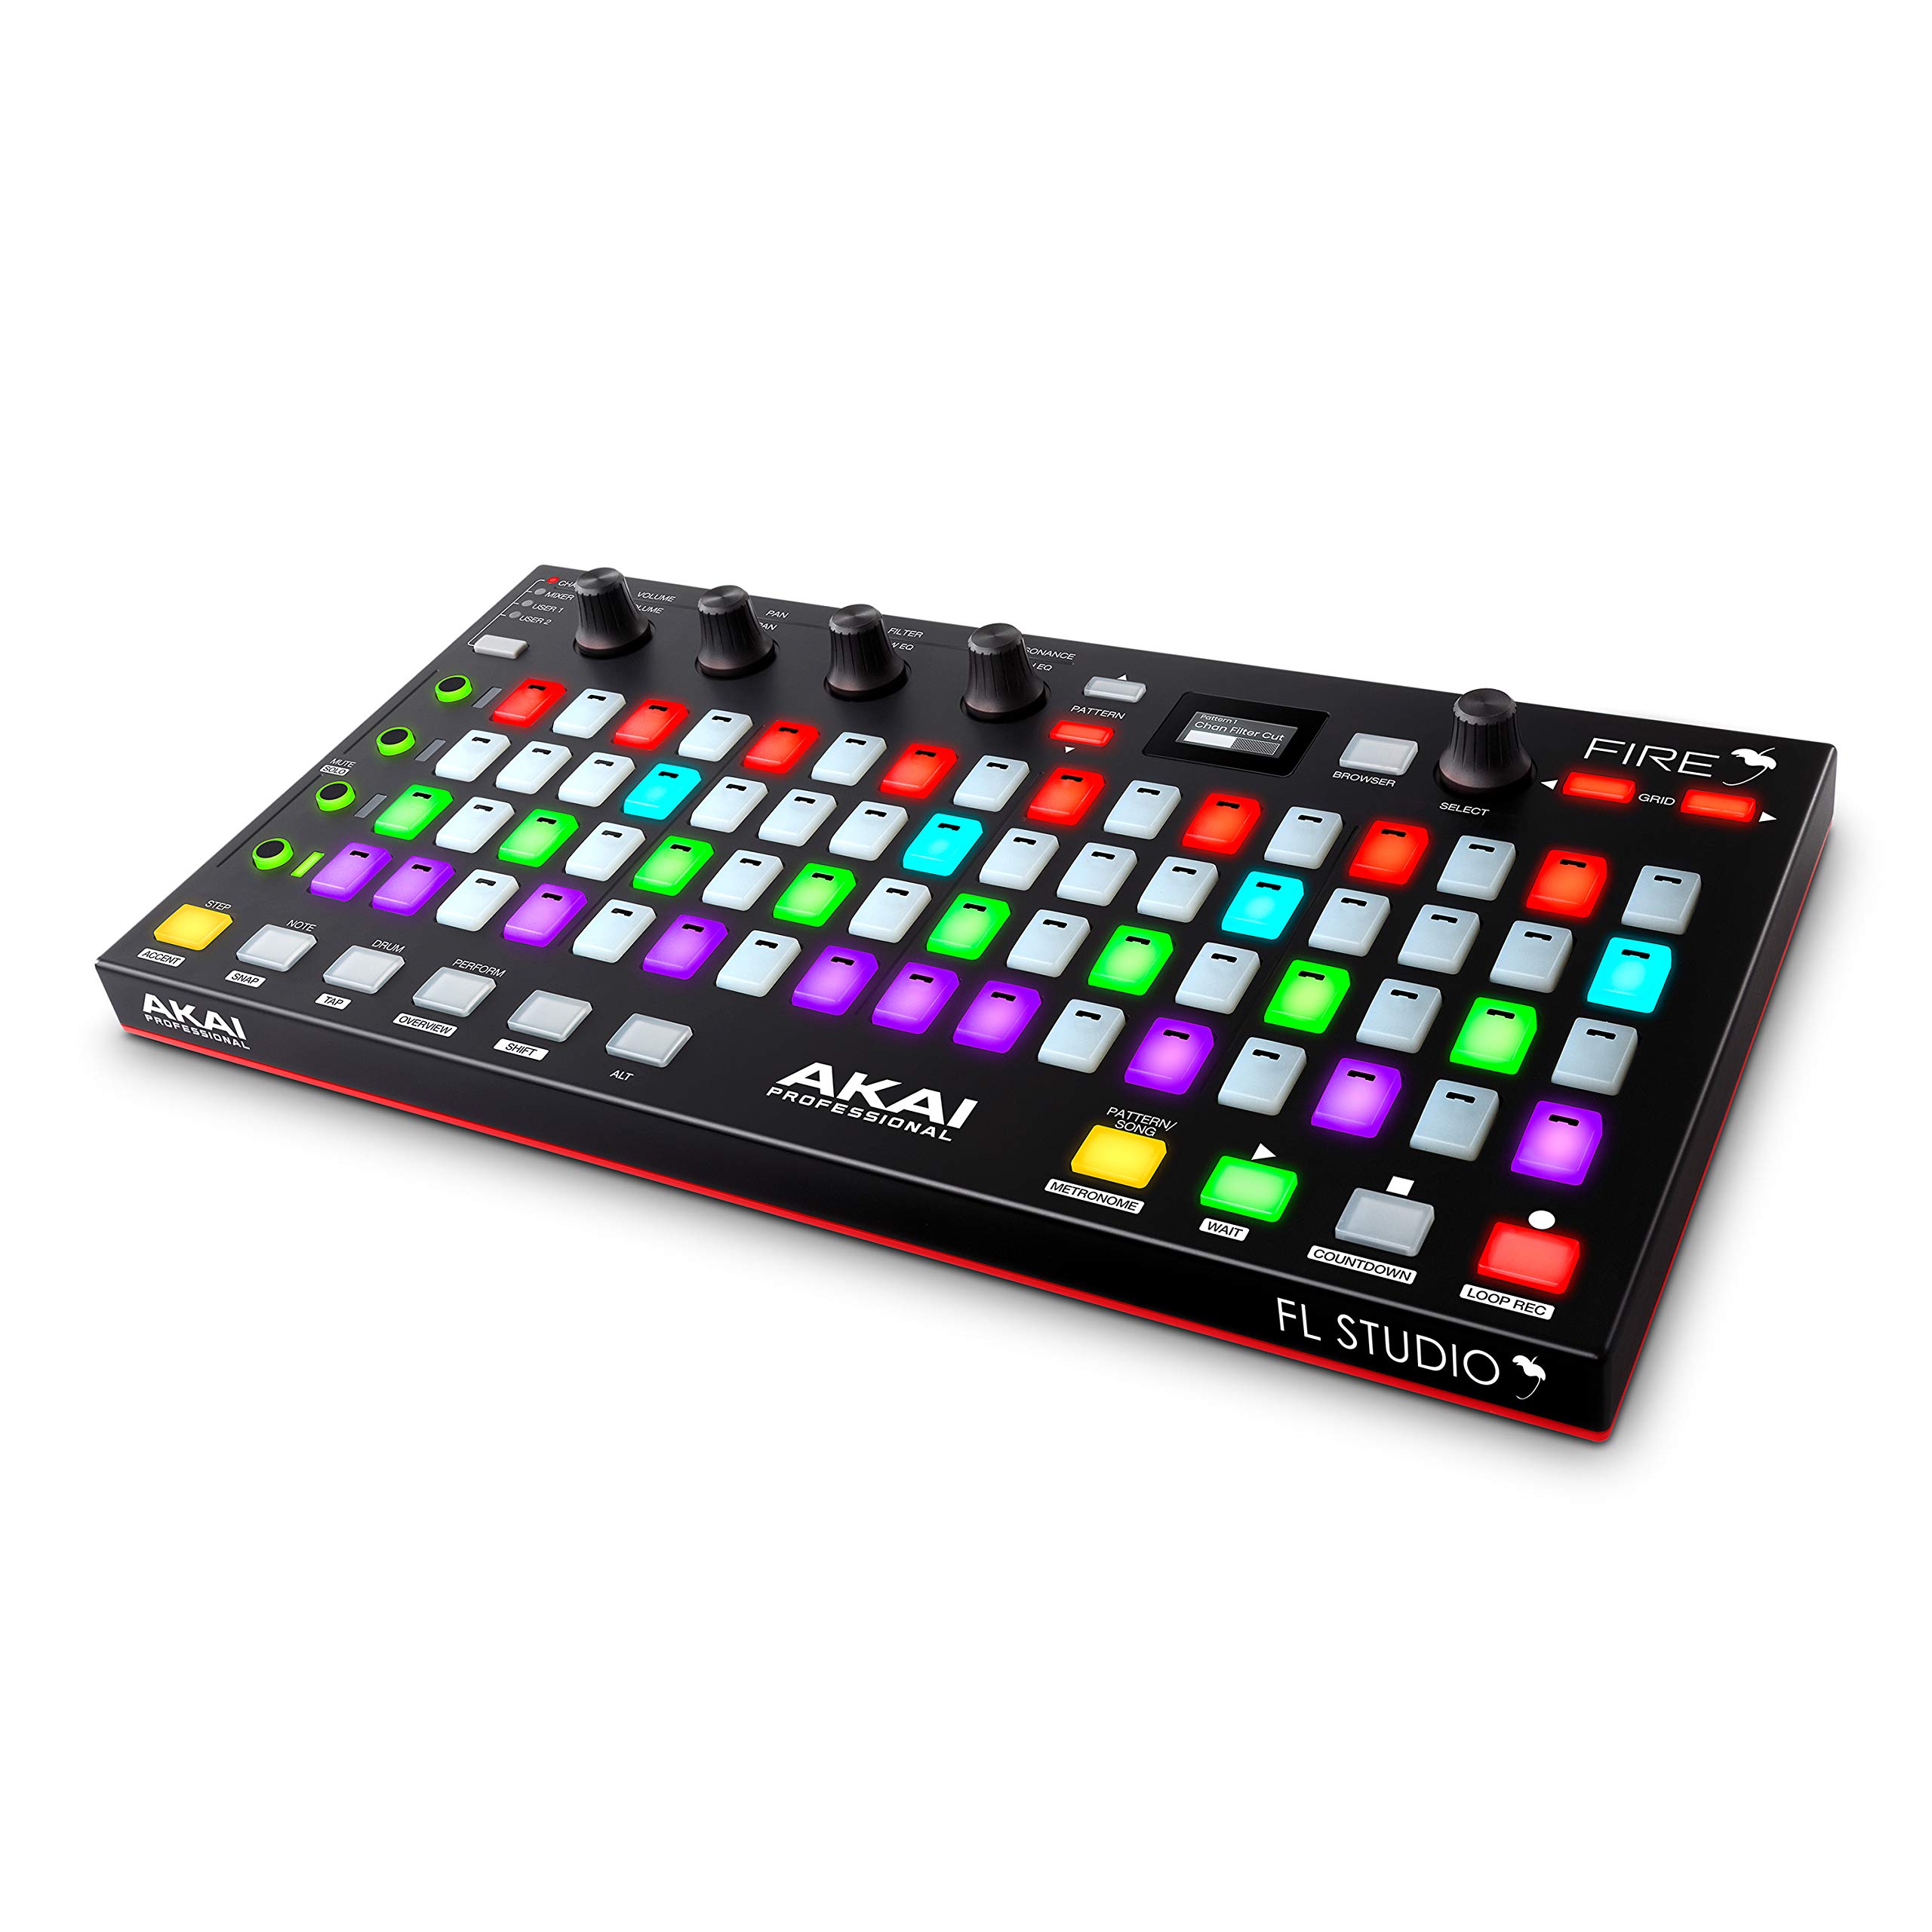 AKAI Professional Fire (mit Software Paket) – USB Midi Keyboard Controller mit FL Studio, RGB LED, Drum Pad, inklusive FL Studio Fruity Edition